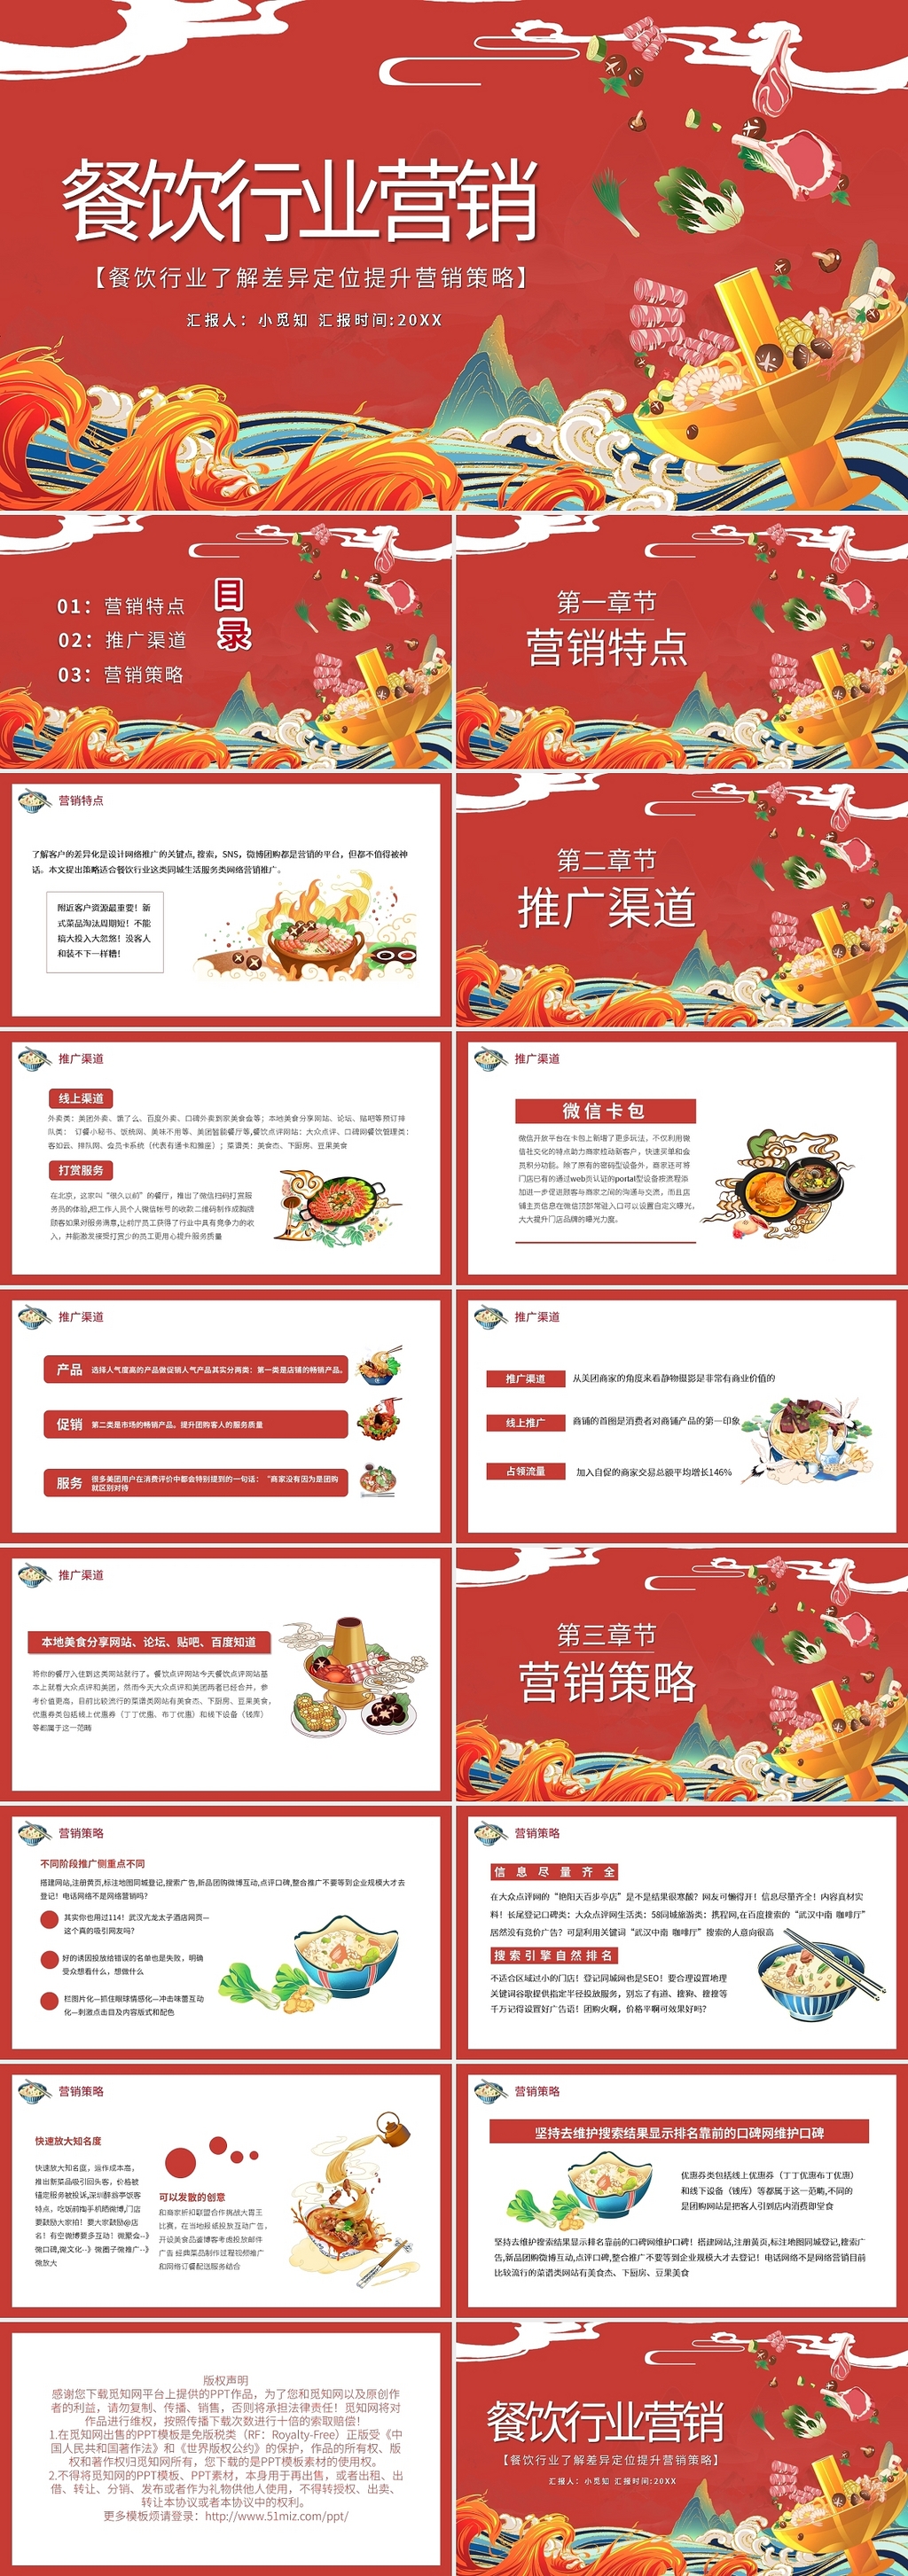 国潮餐饮行业营销策略PPT模板宣传PPT动态PPT餐饮行业营销策划